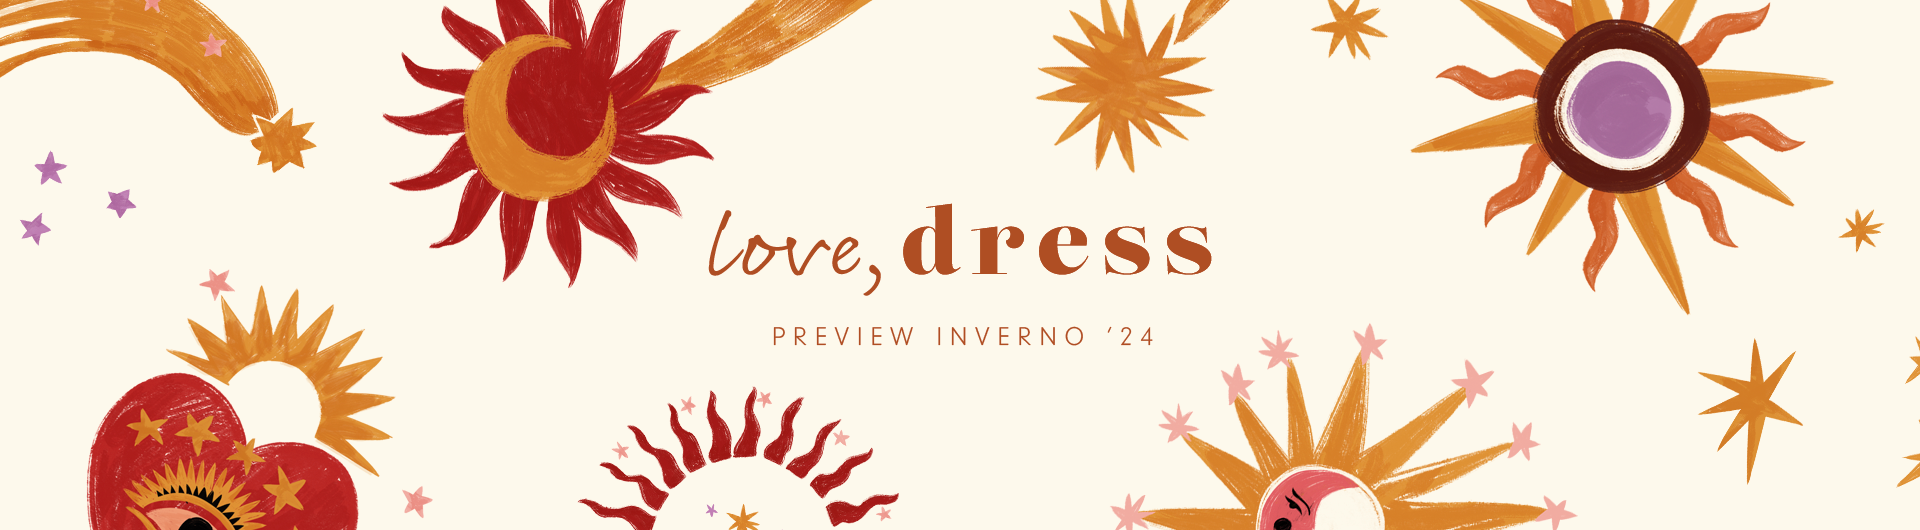 Preview da coleção Liberdade da Dress To. A coleção inclui vestidos, blusas, calças, macacões, saias, casacoes e mais! Love Dress.